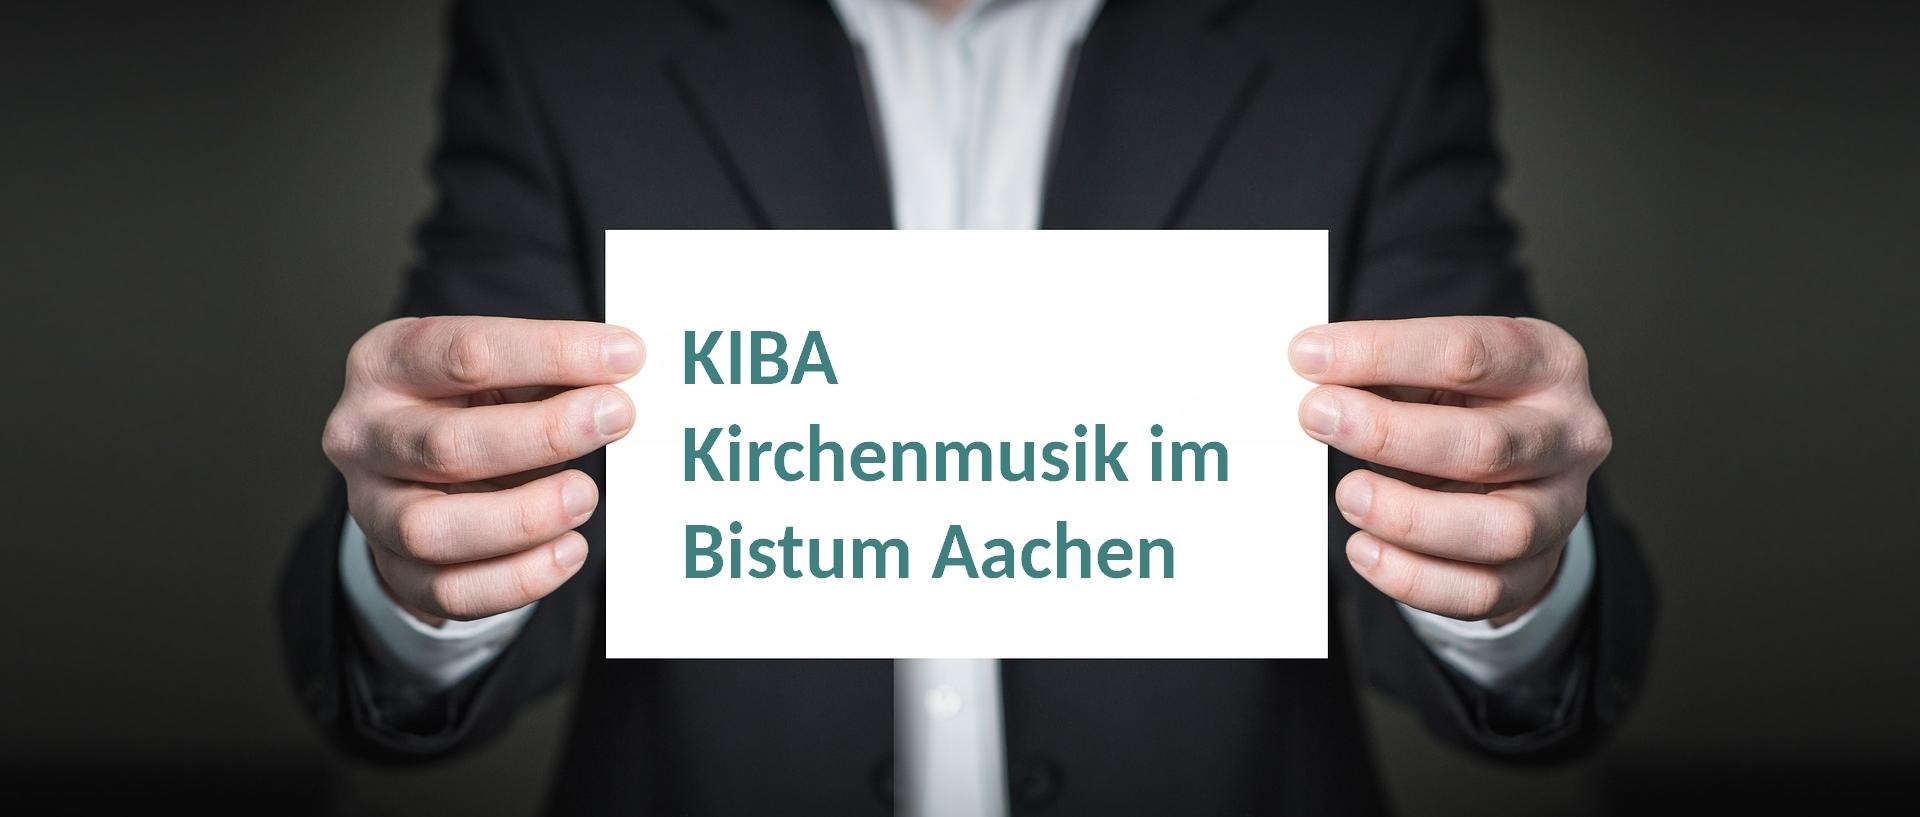 KIBA (c) www.pixabay.com